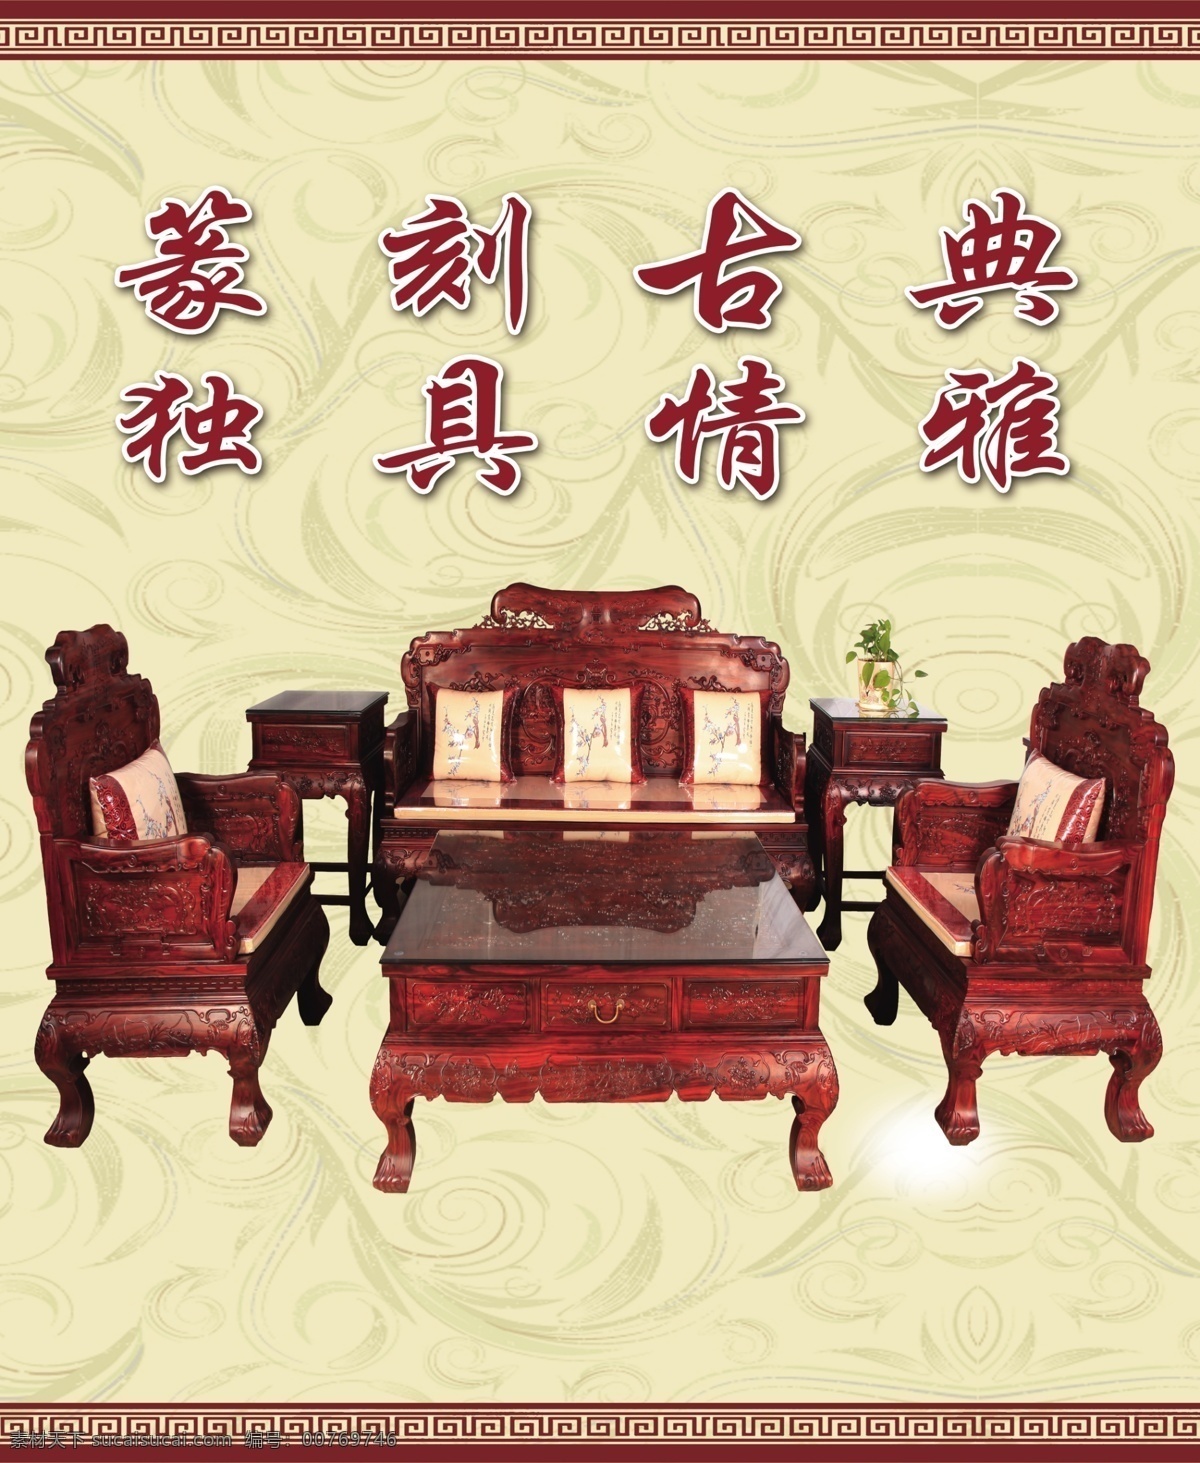 红木家具 红木椅子 红木桌子 篆刻古典 独居清雅 古风背景